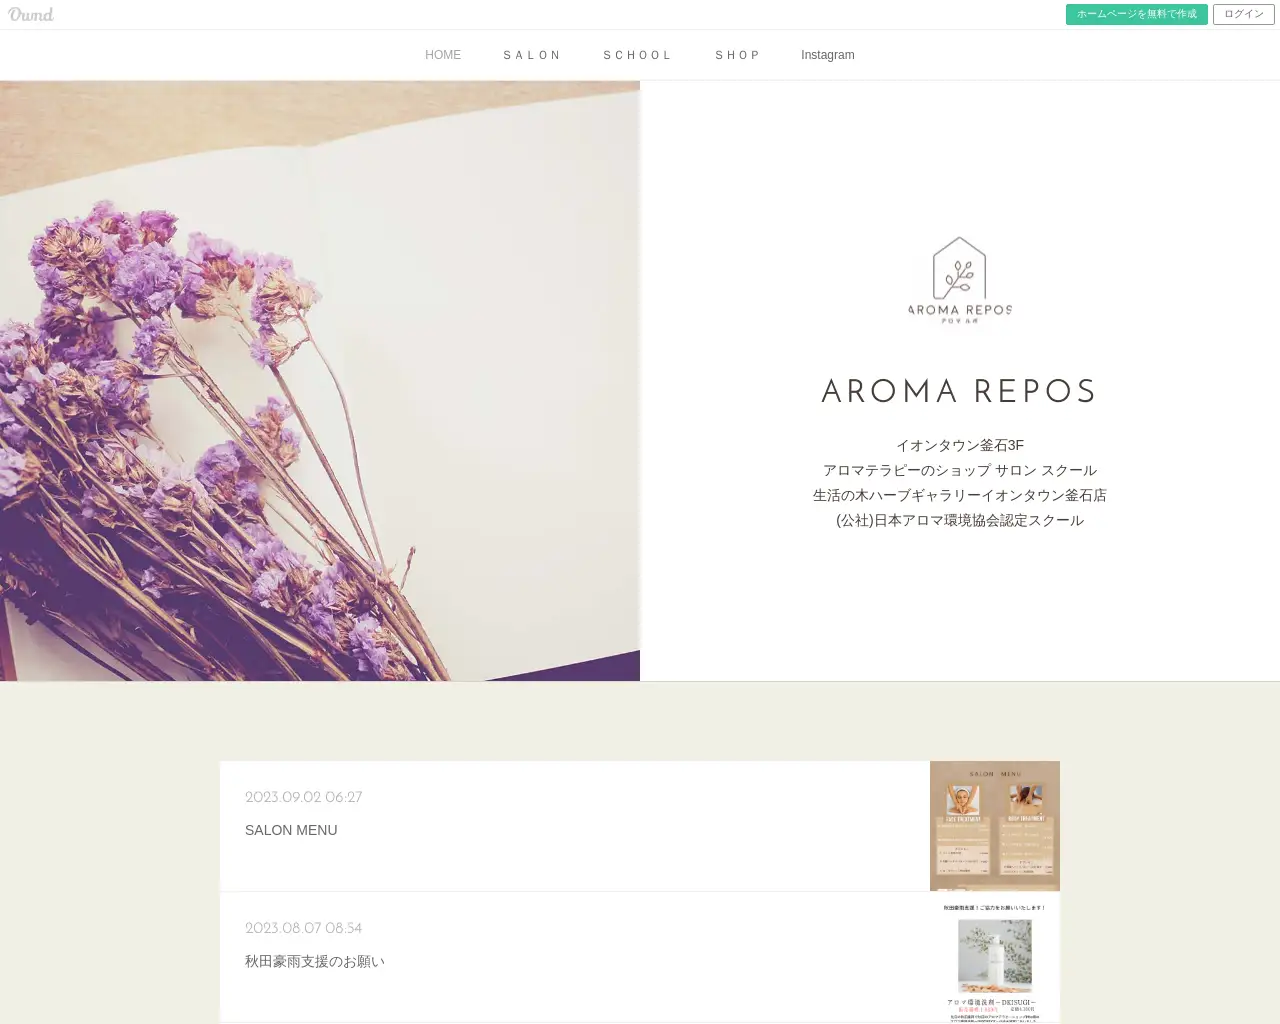 生活の木ハーブギャラリーイオンタウン釜石店 AROMA REPOS site